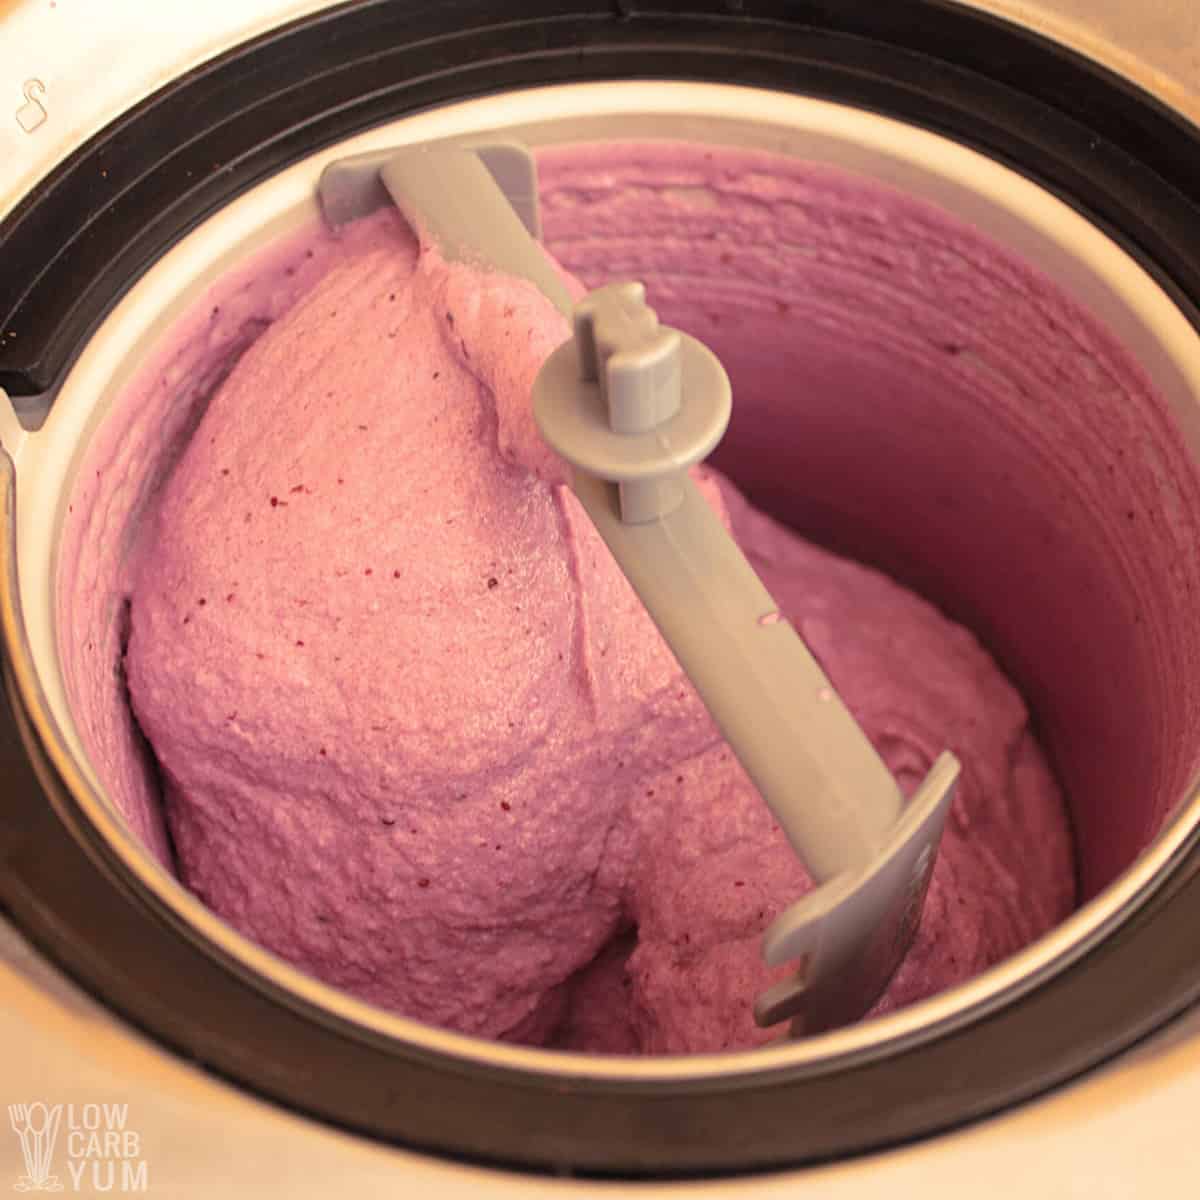 churned keto blueberry ice cream.